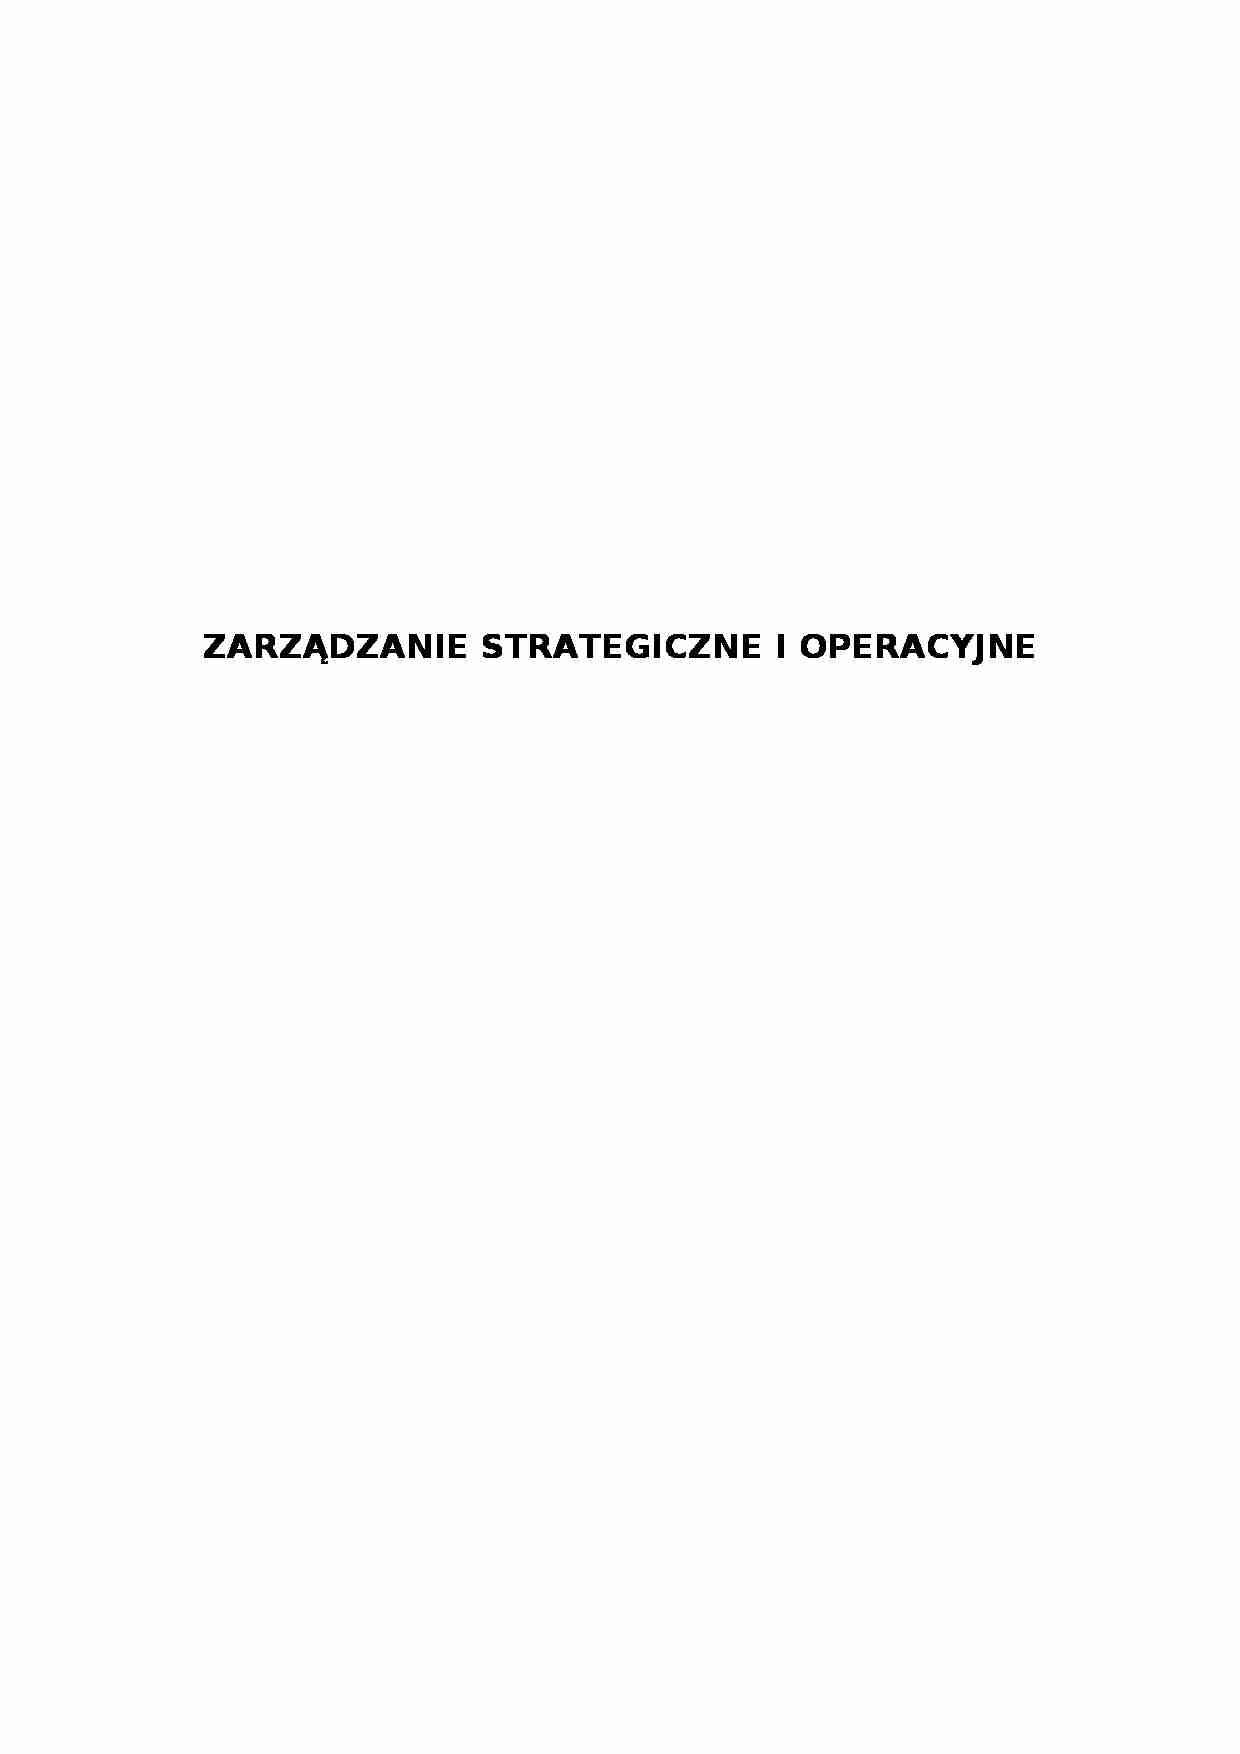 Zarządzanie strategiczne i operacyjne (12 stron).doc - strona 1